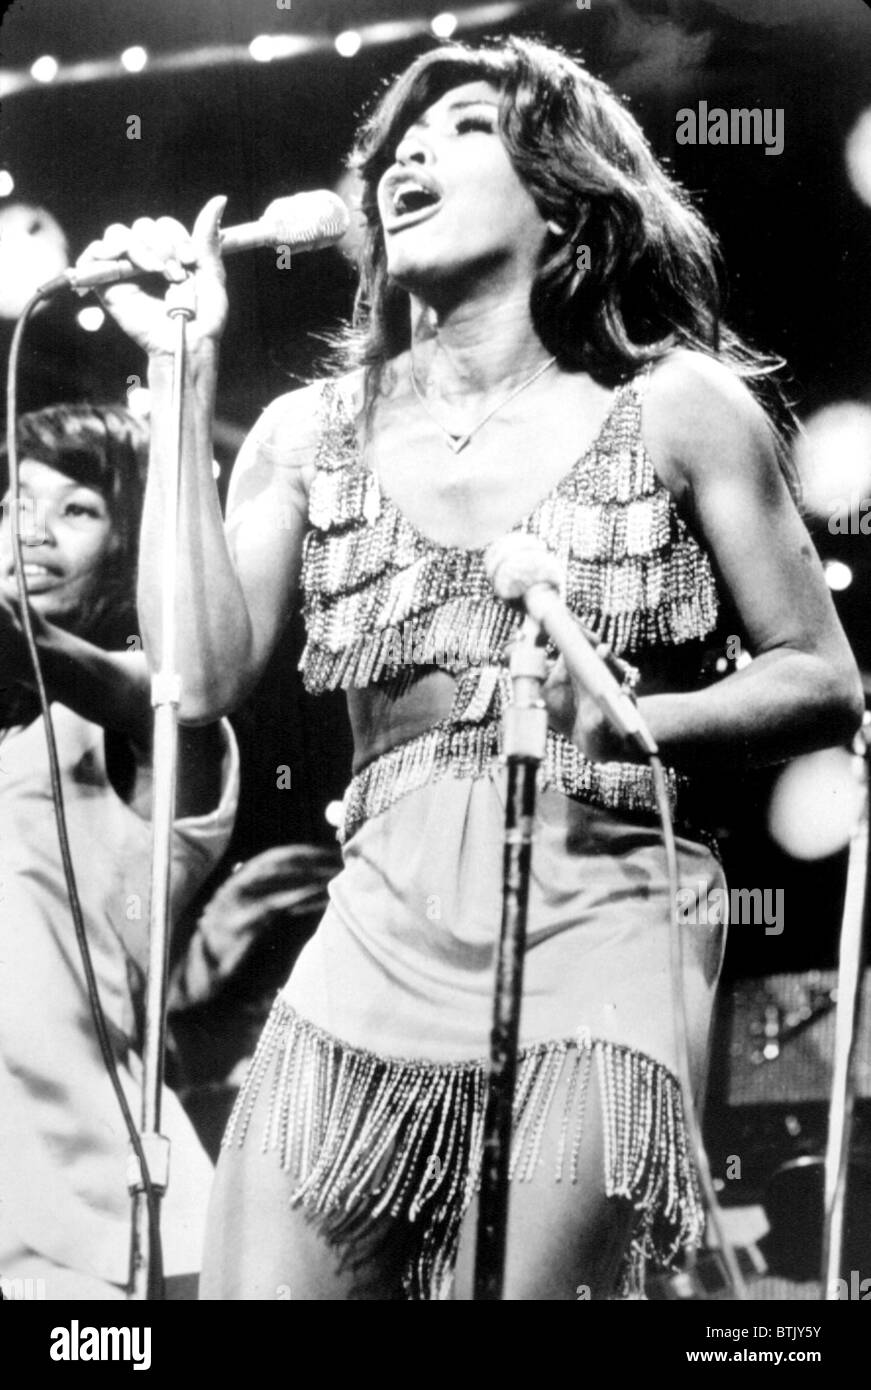 TINA TURNER, during a performance, circa 1971. Stock Photo